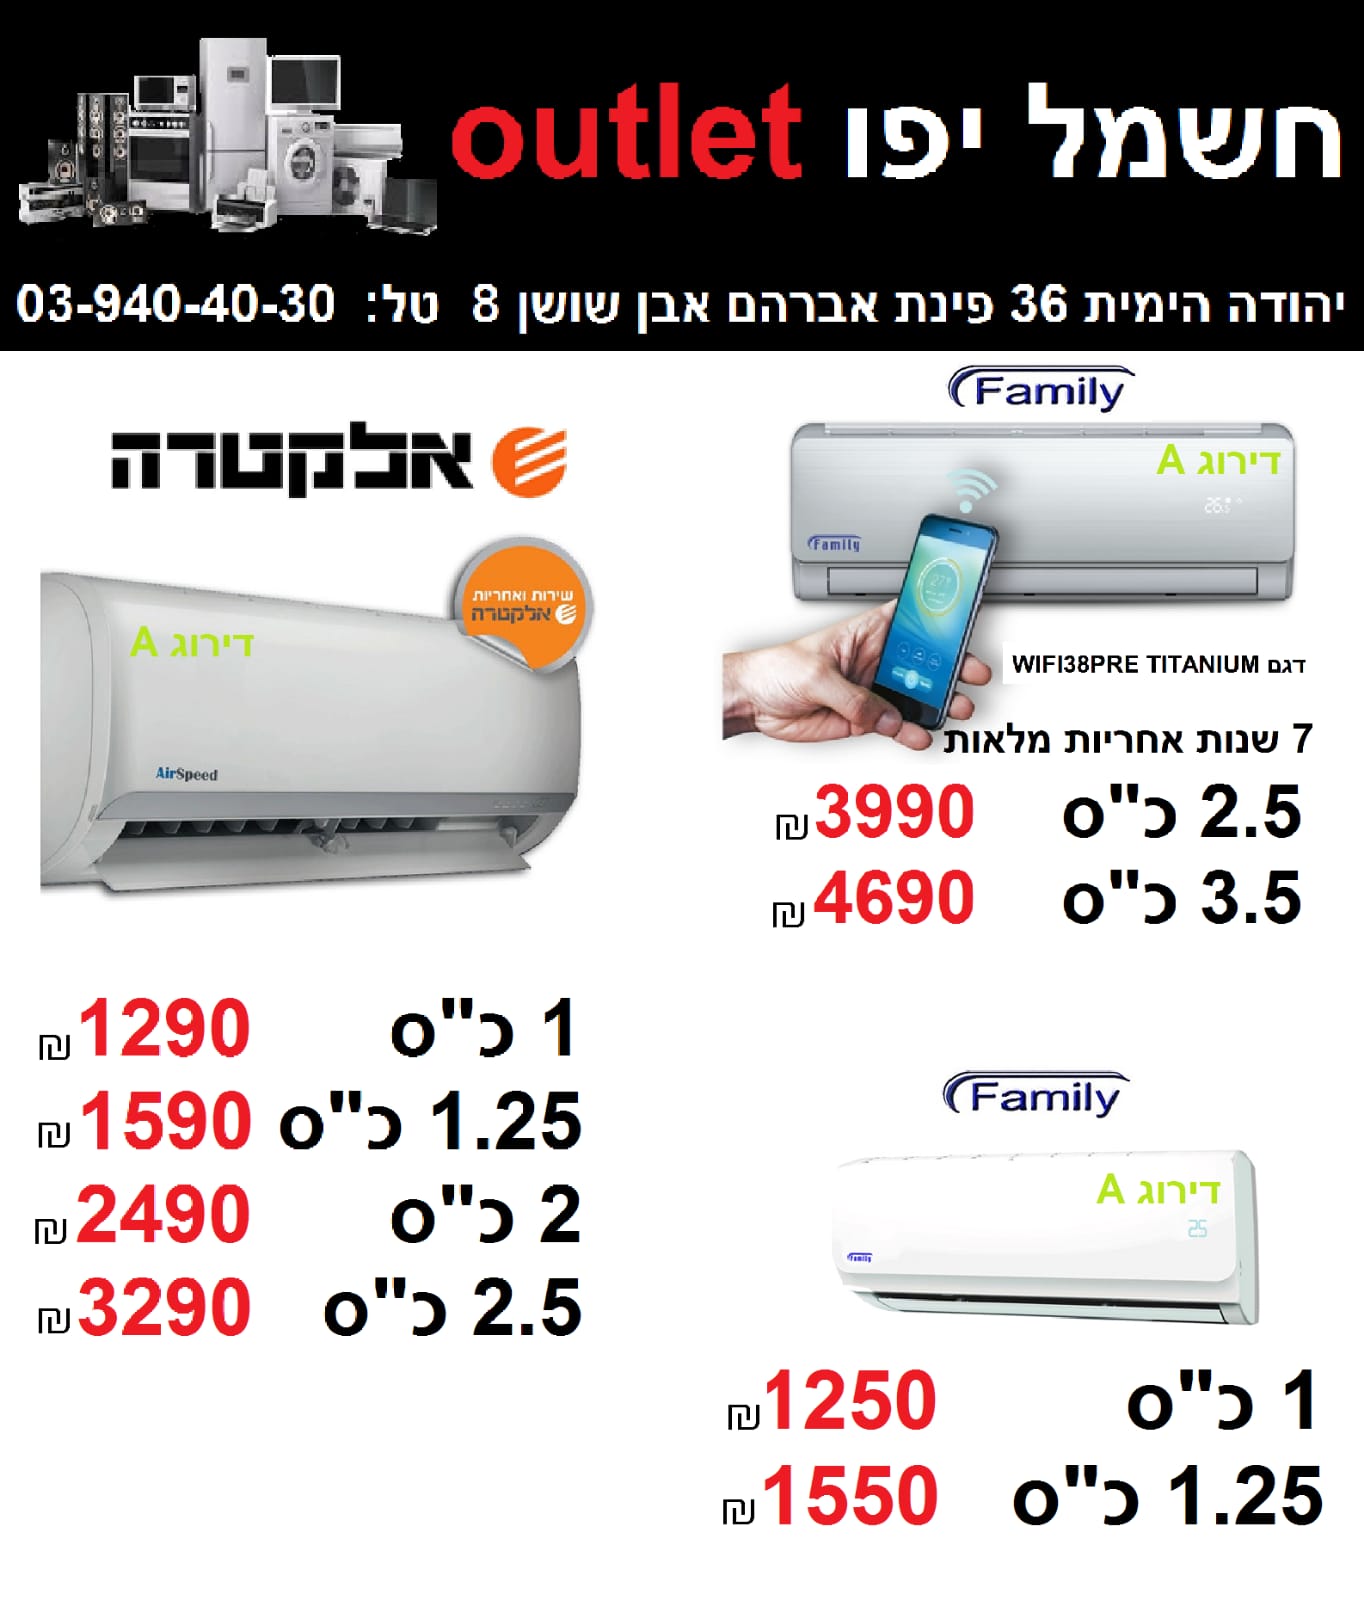  طالع الأسعار - حملة تخفيضات مجنونة على الأجهزة الكهربائية في صالة كهرباء يافا Outlet